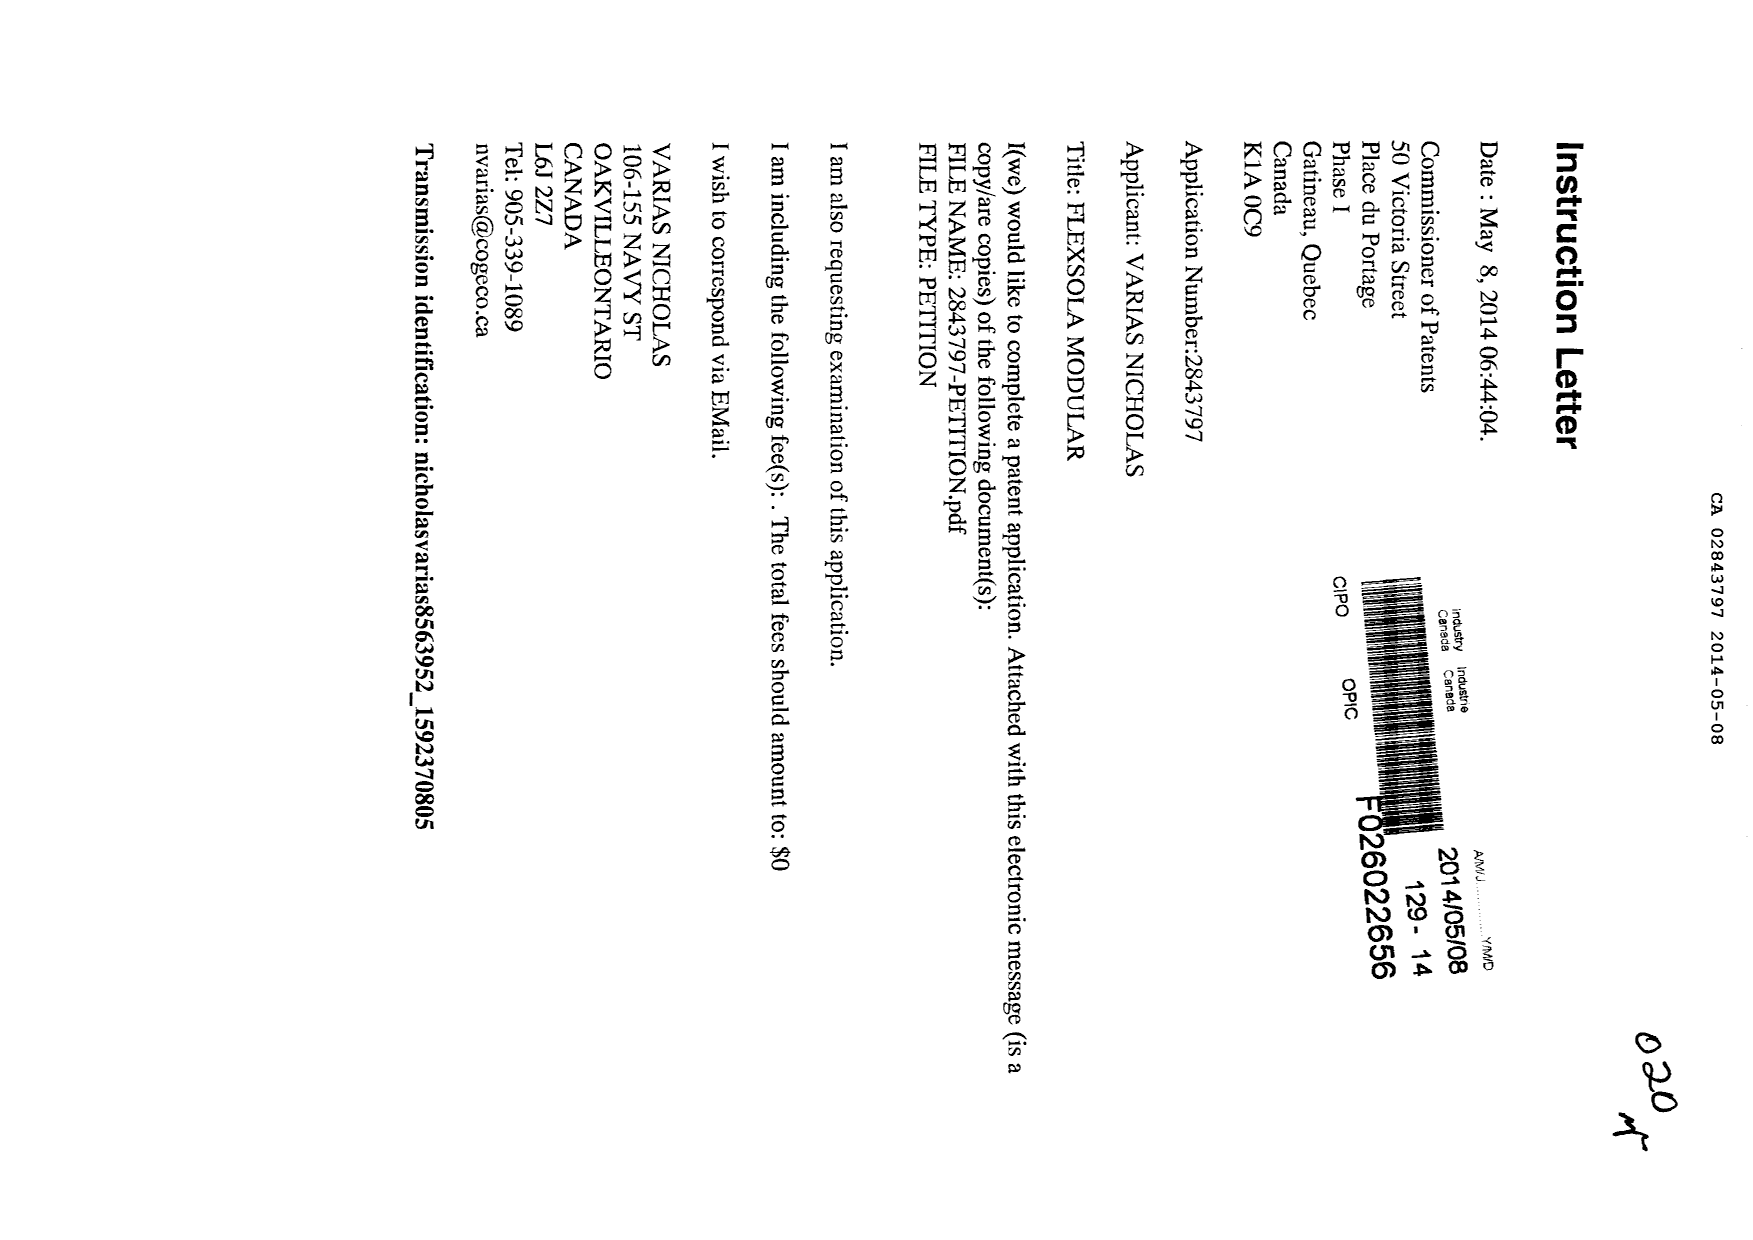 Document de brevet canadien 2843797. Correspondance 20131208. Image 1 de 3